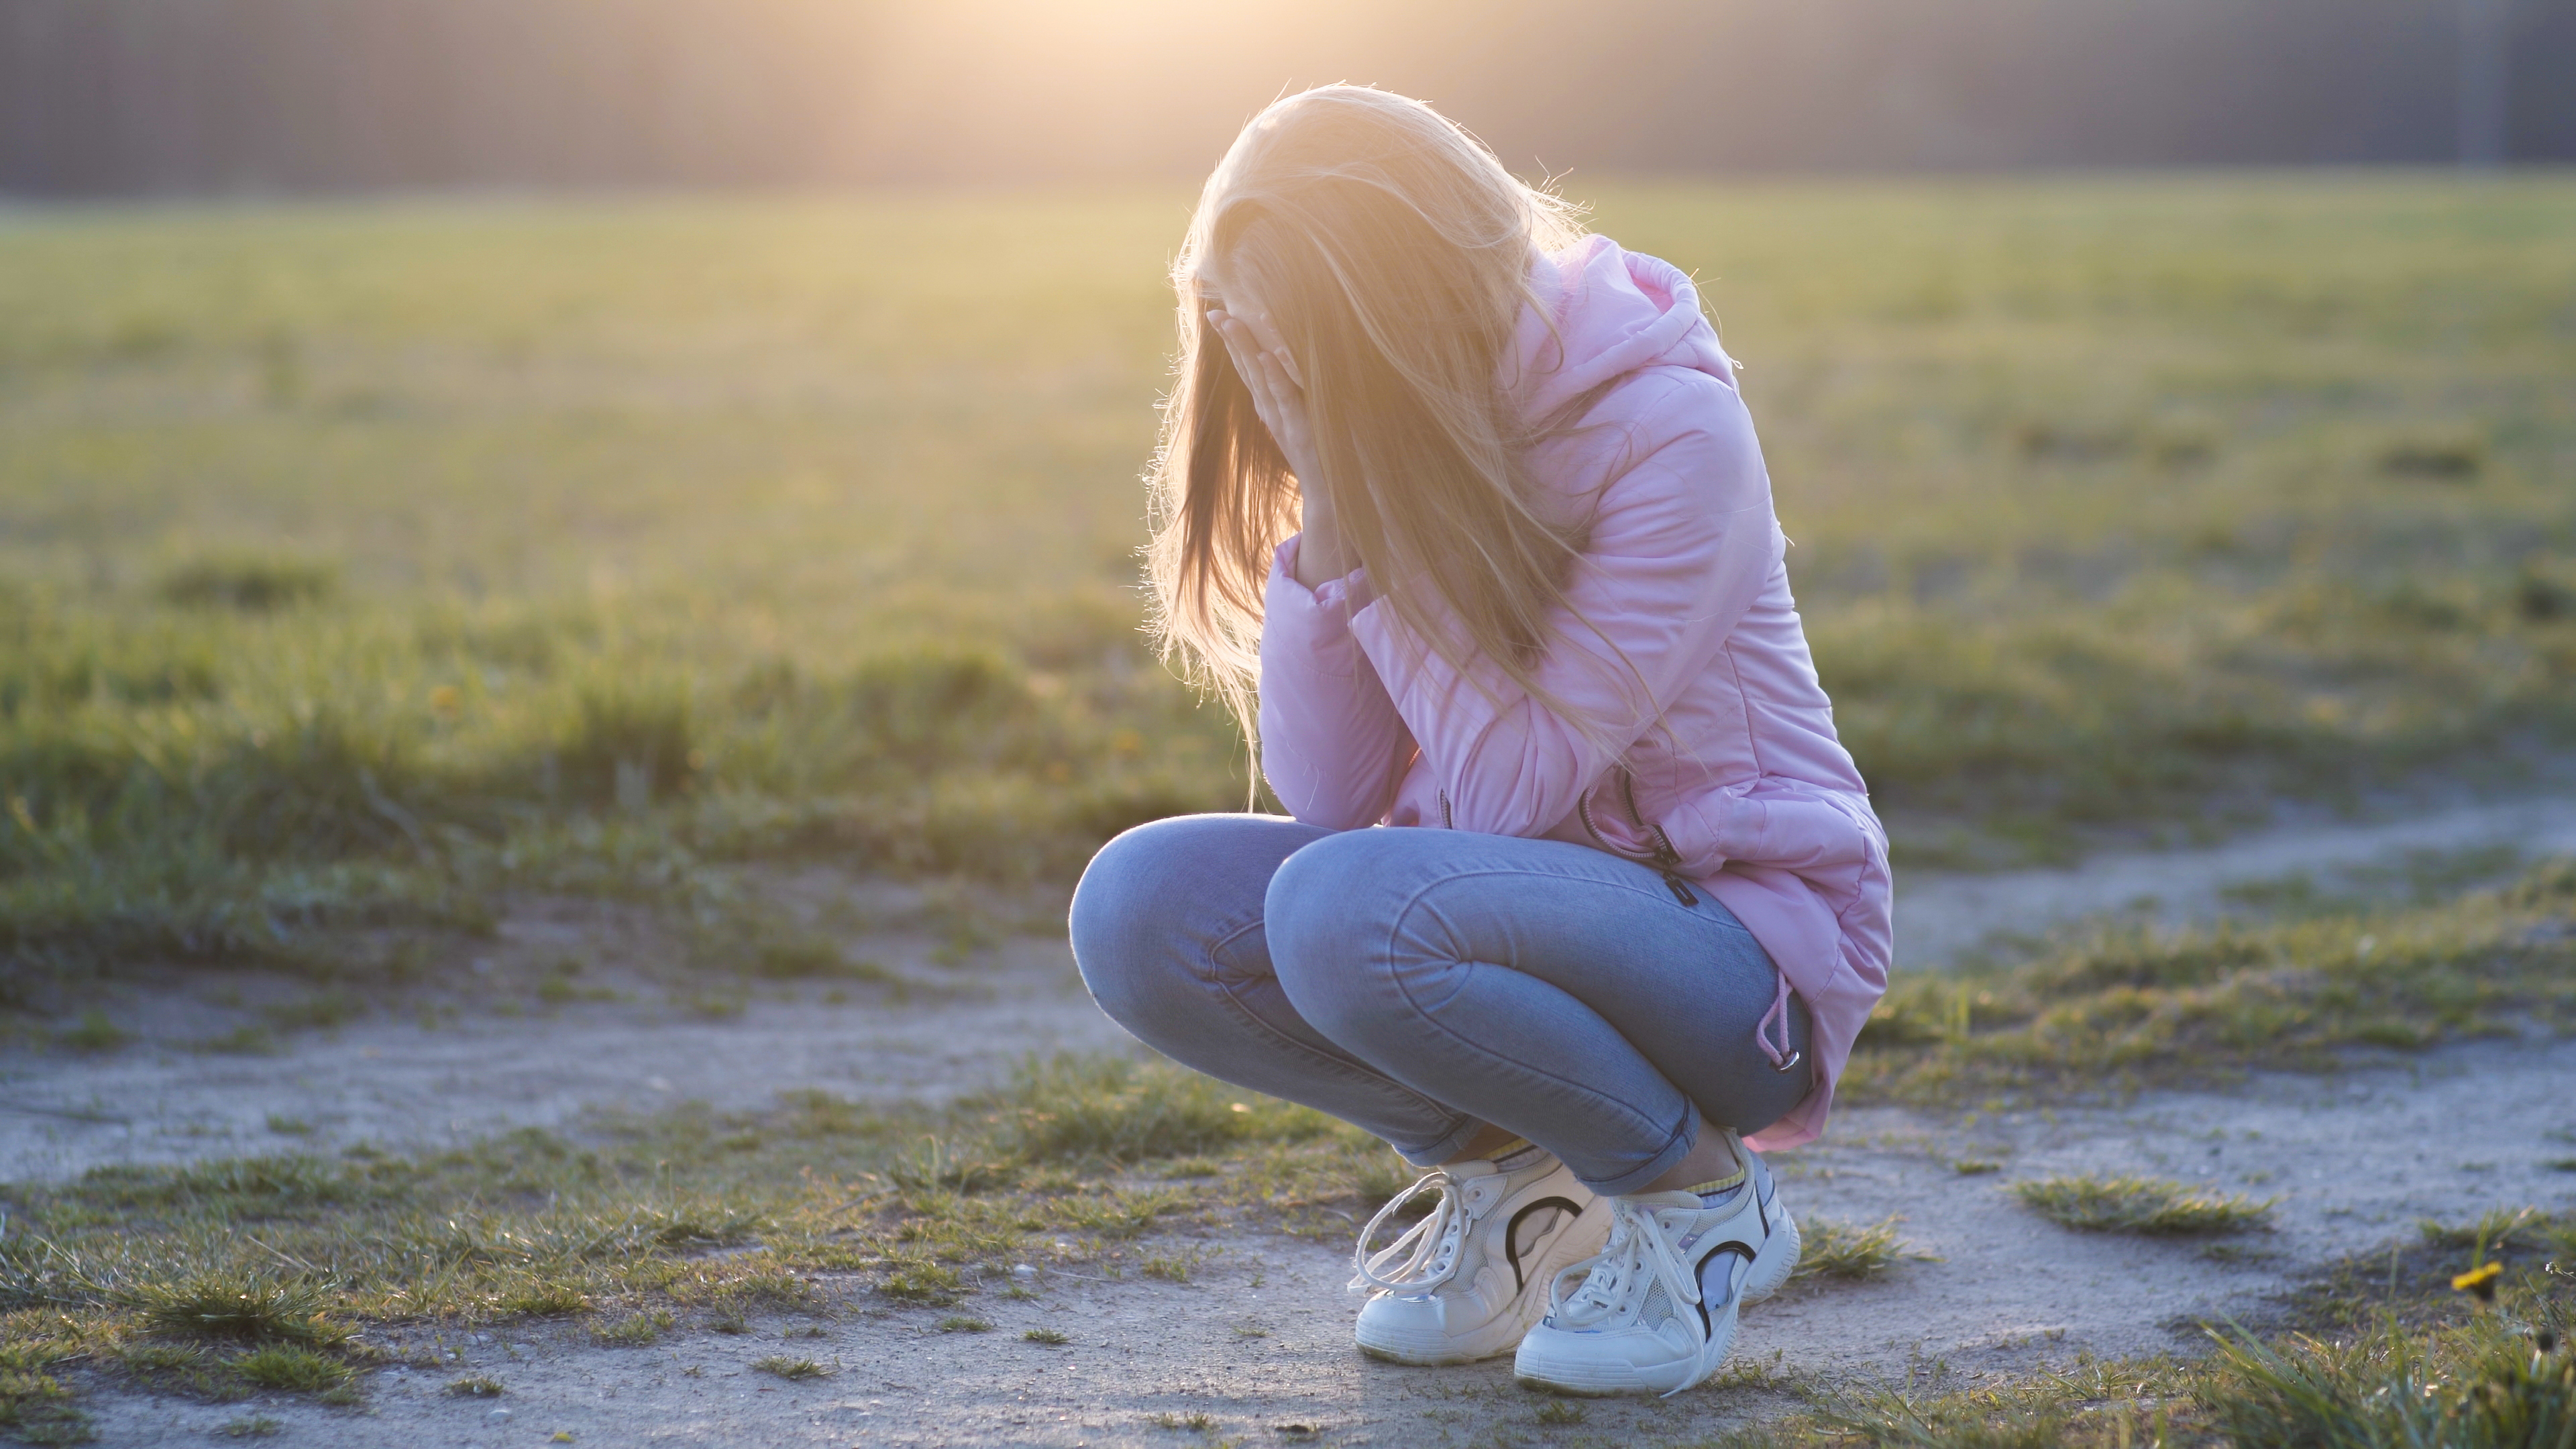 Une jeune fille en pleine crise émotionnelle | Source : Shutterstock